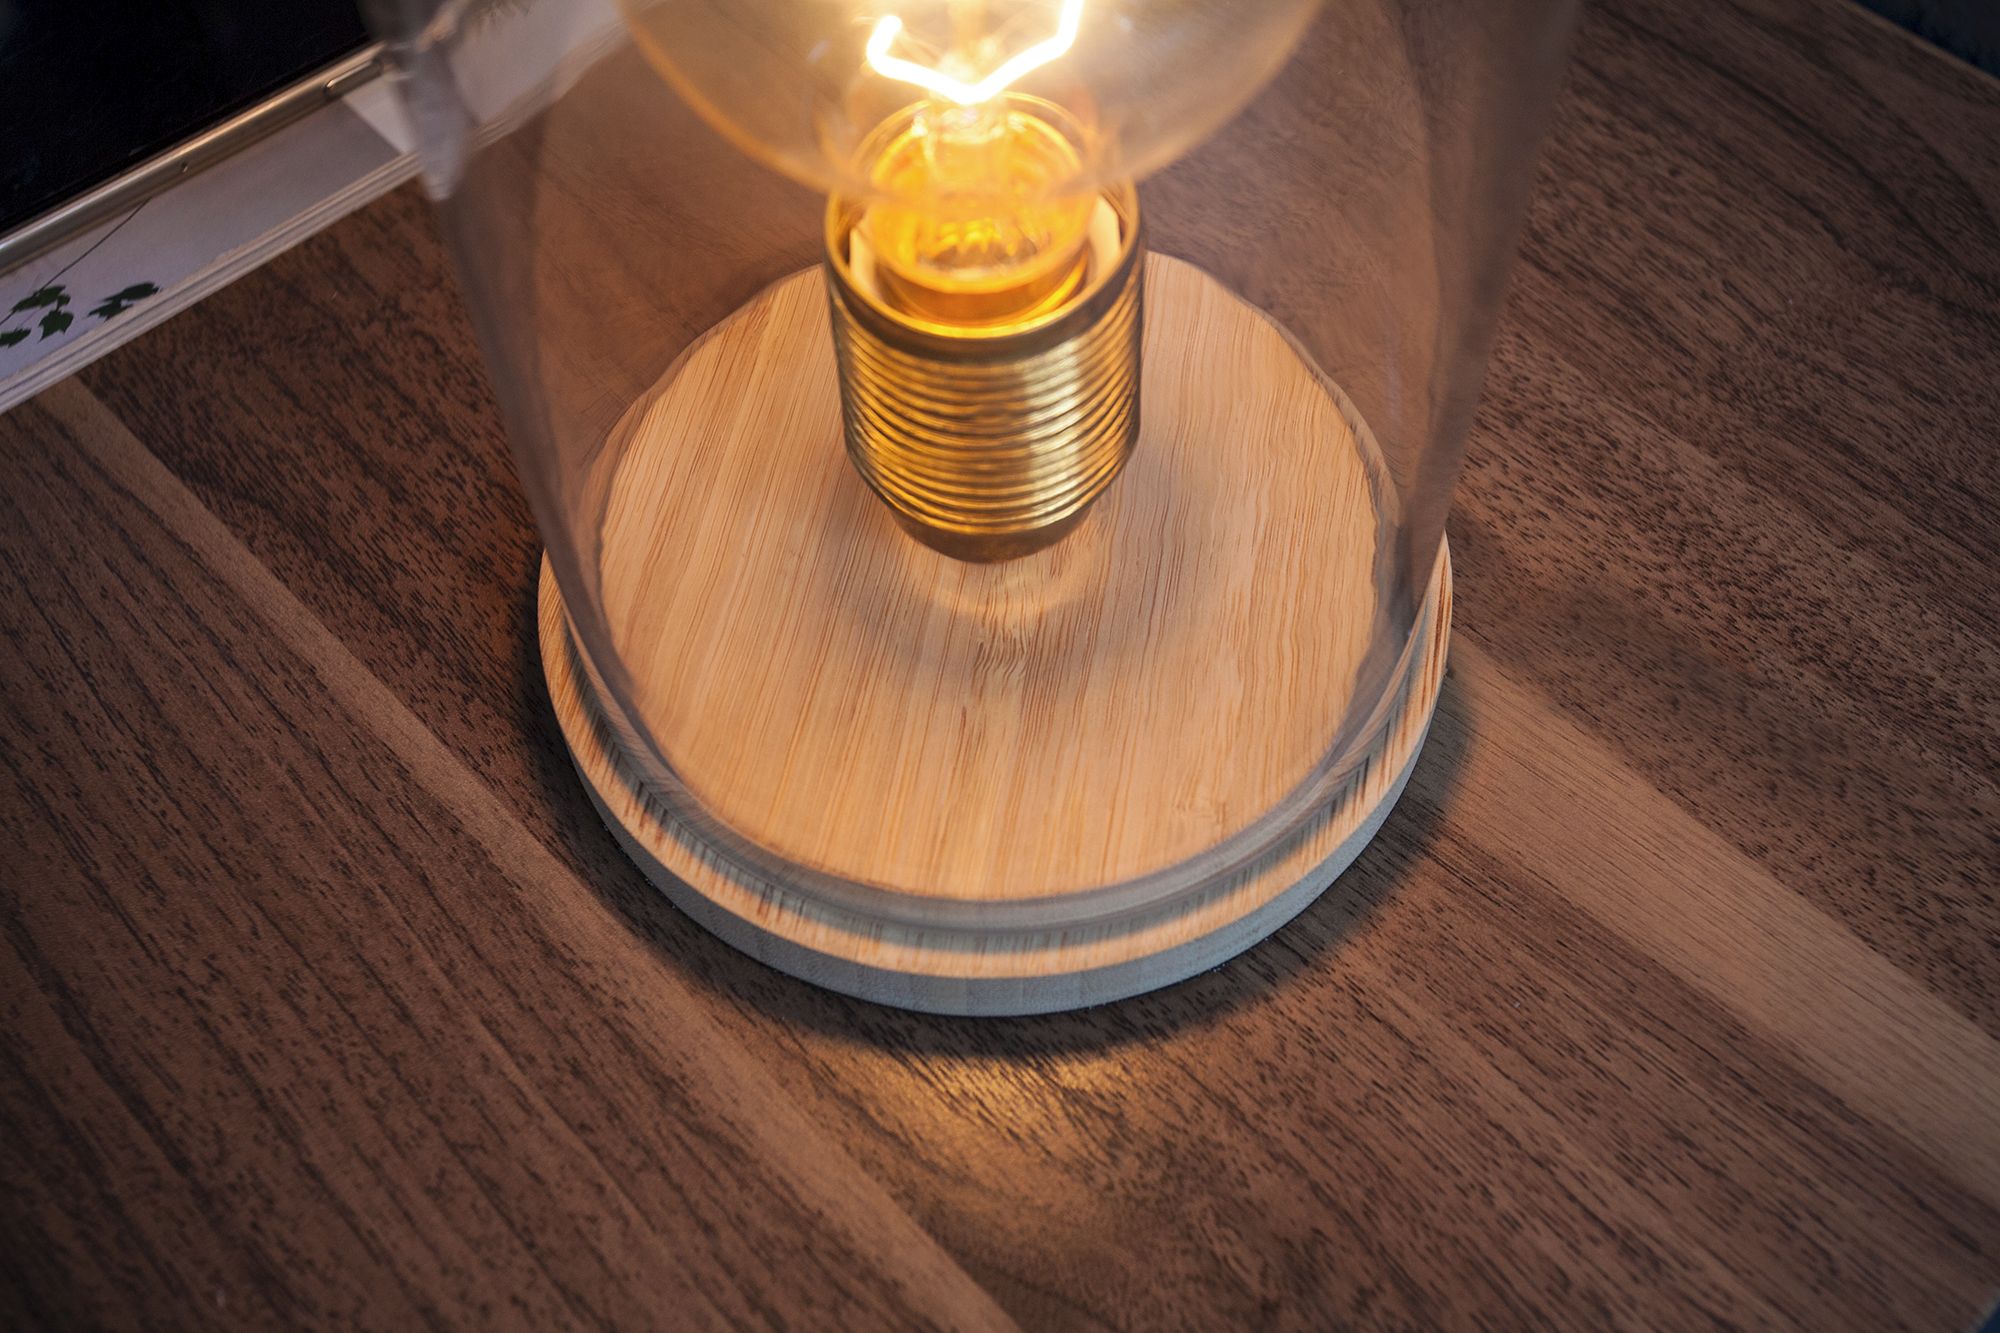 Stilvolle Tischlampe Bauhaus rund 20cm Edison Lampe